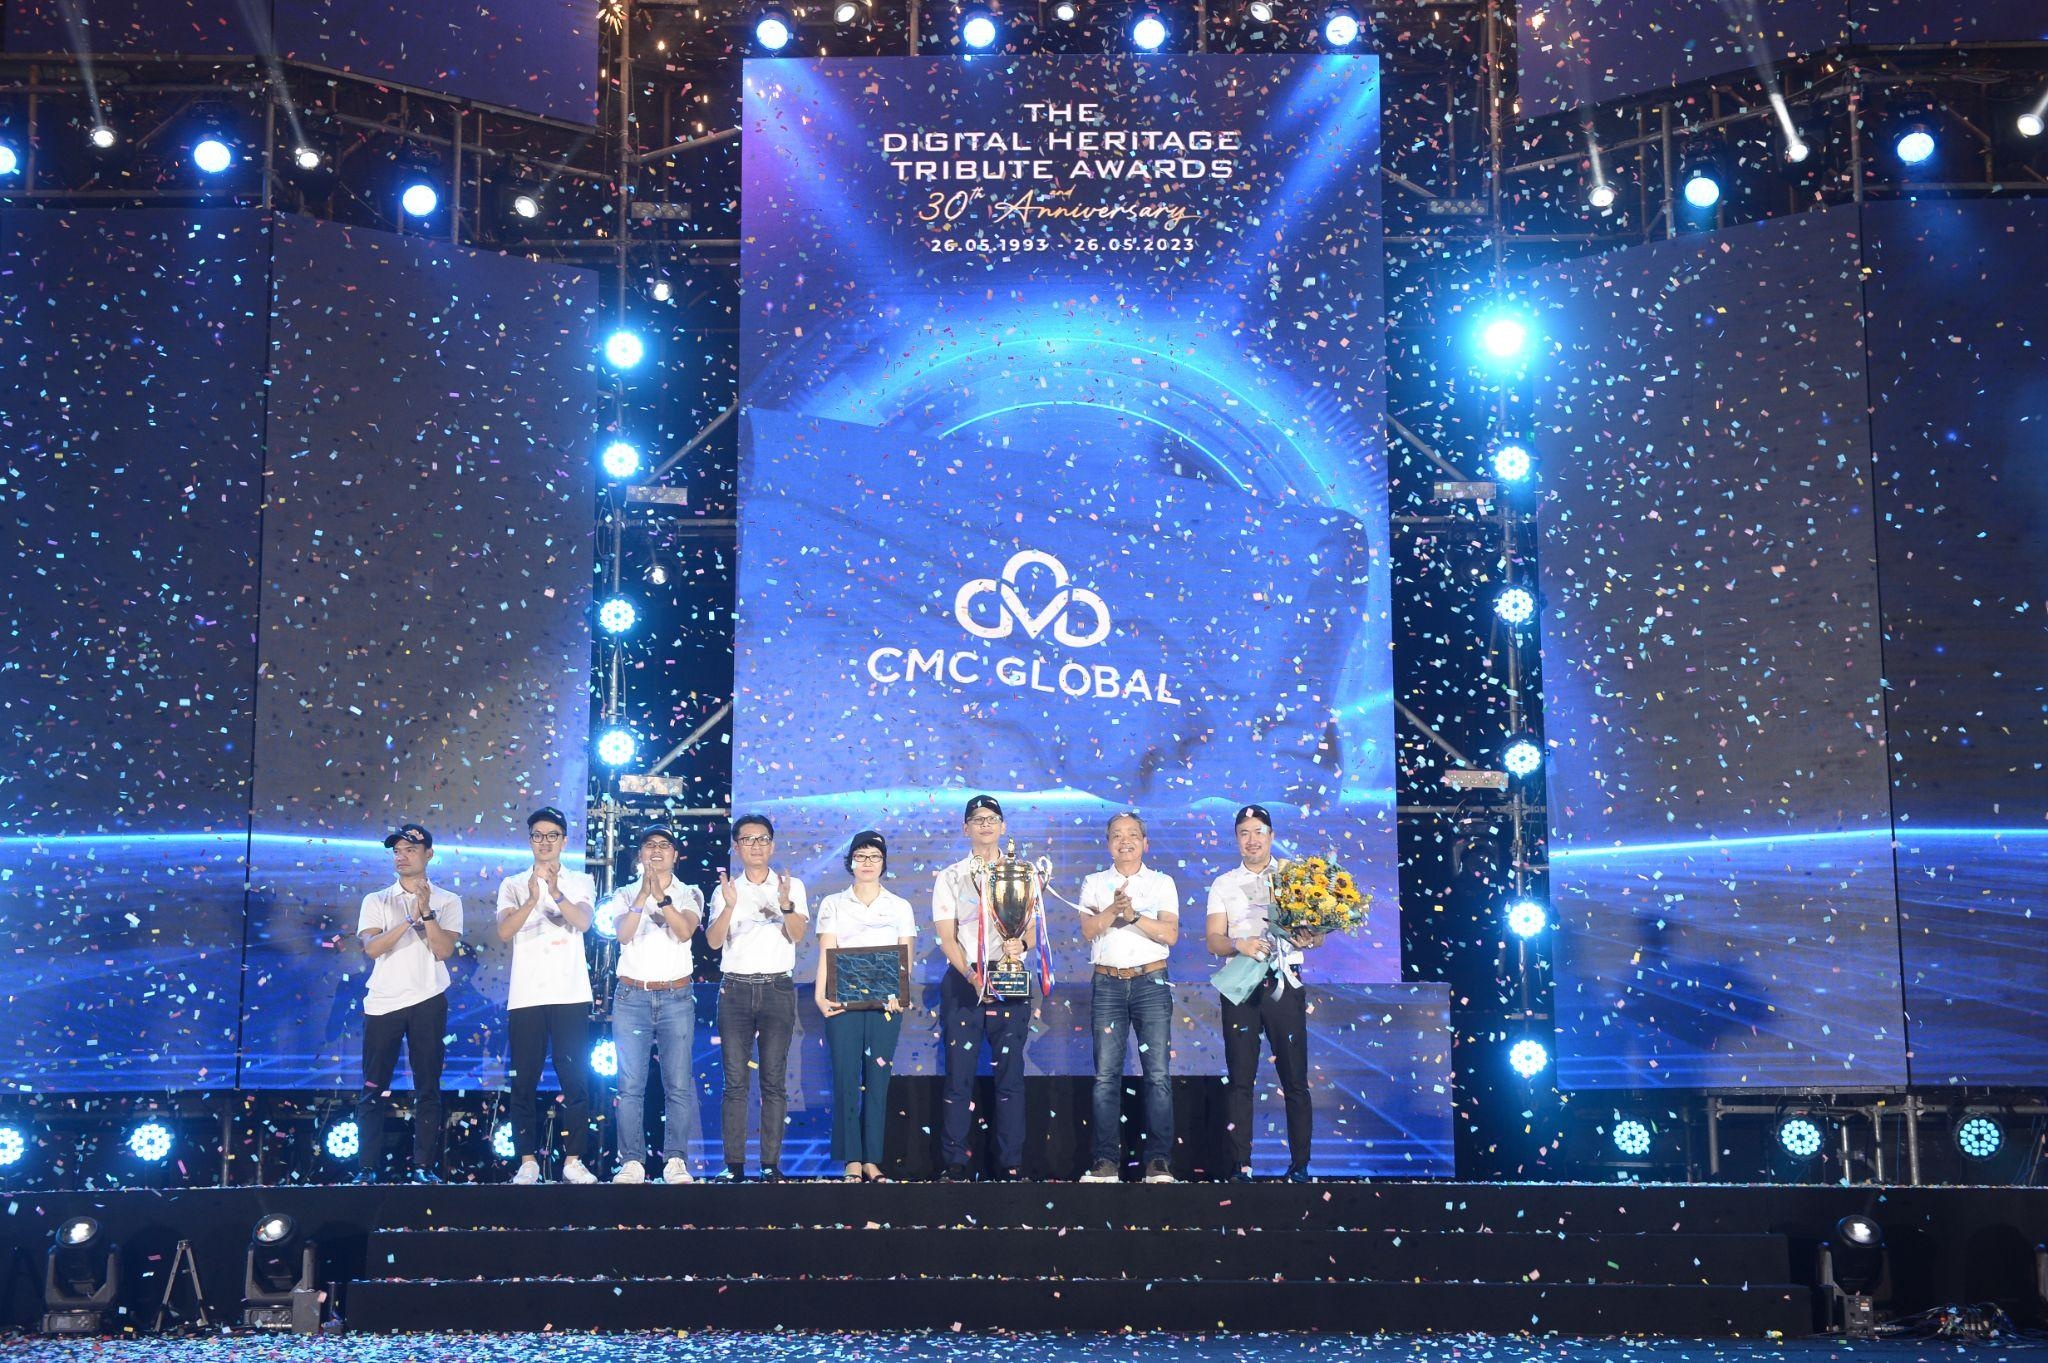 Tập thể CMC Global vinh dự nhận giải “Lá cờ đầu” nhân kỉ niệm 30 năm thành lập Tập đoàn Công nghệ CMC